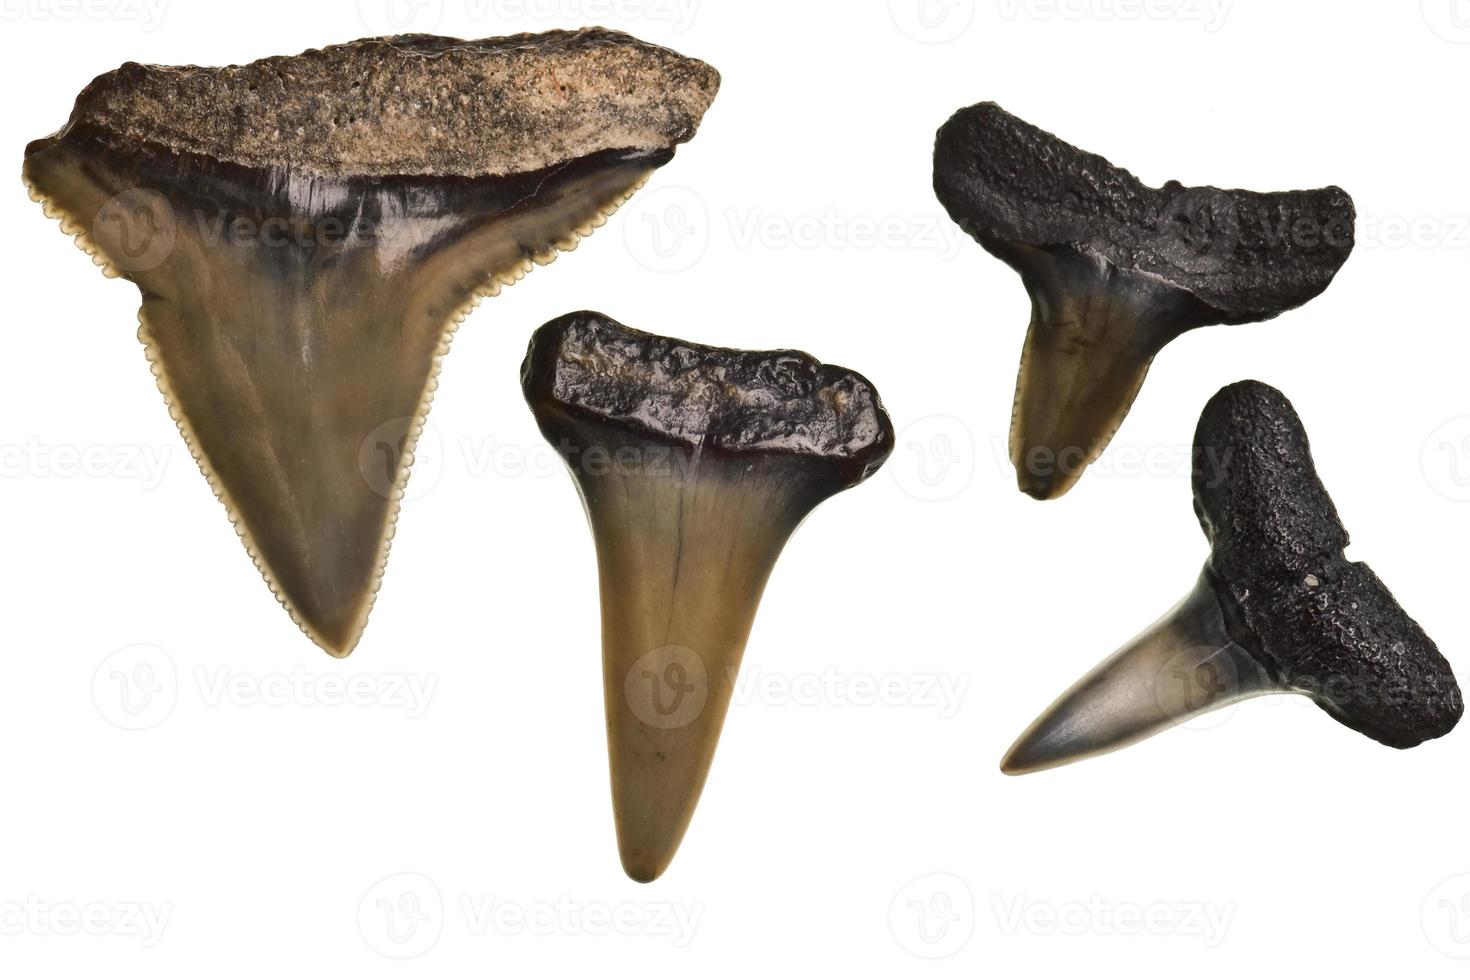 dentes de tubarão fossilizados isolados no branco foto